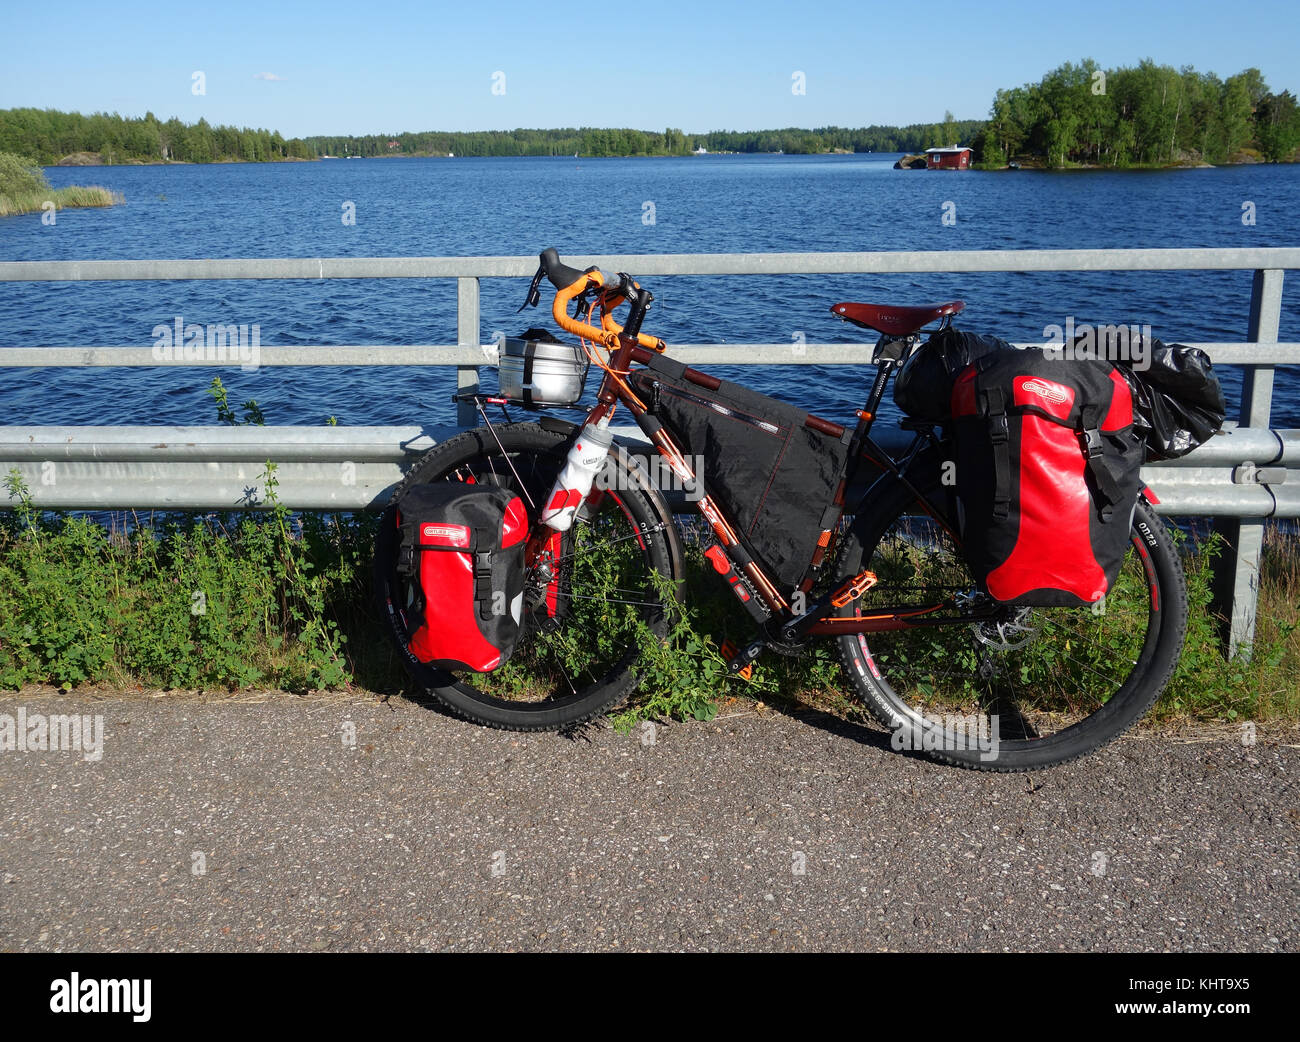 Lappeenranta, Finlande – 29 juin 2015 : vélo d'aventure avec capacités VTT et VTT, valises rouges et autres excursions et camping ge Banque D'Images